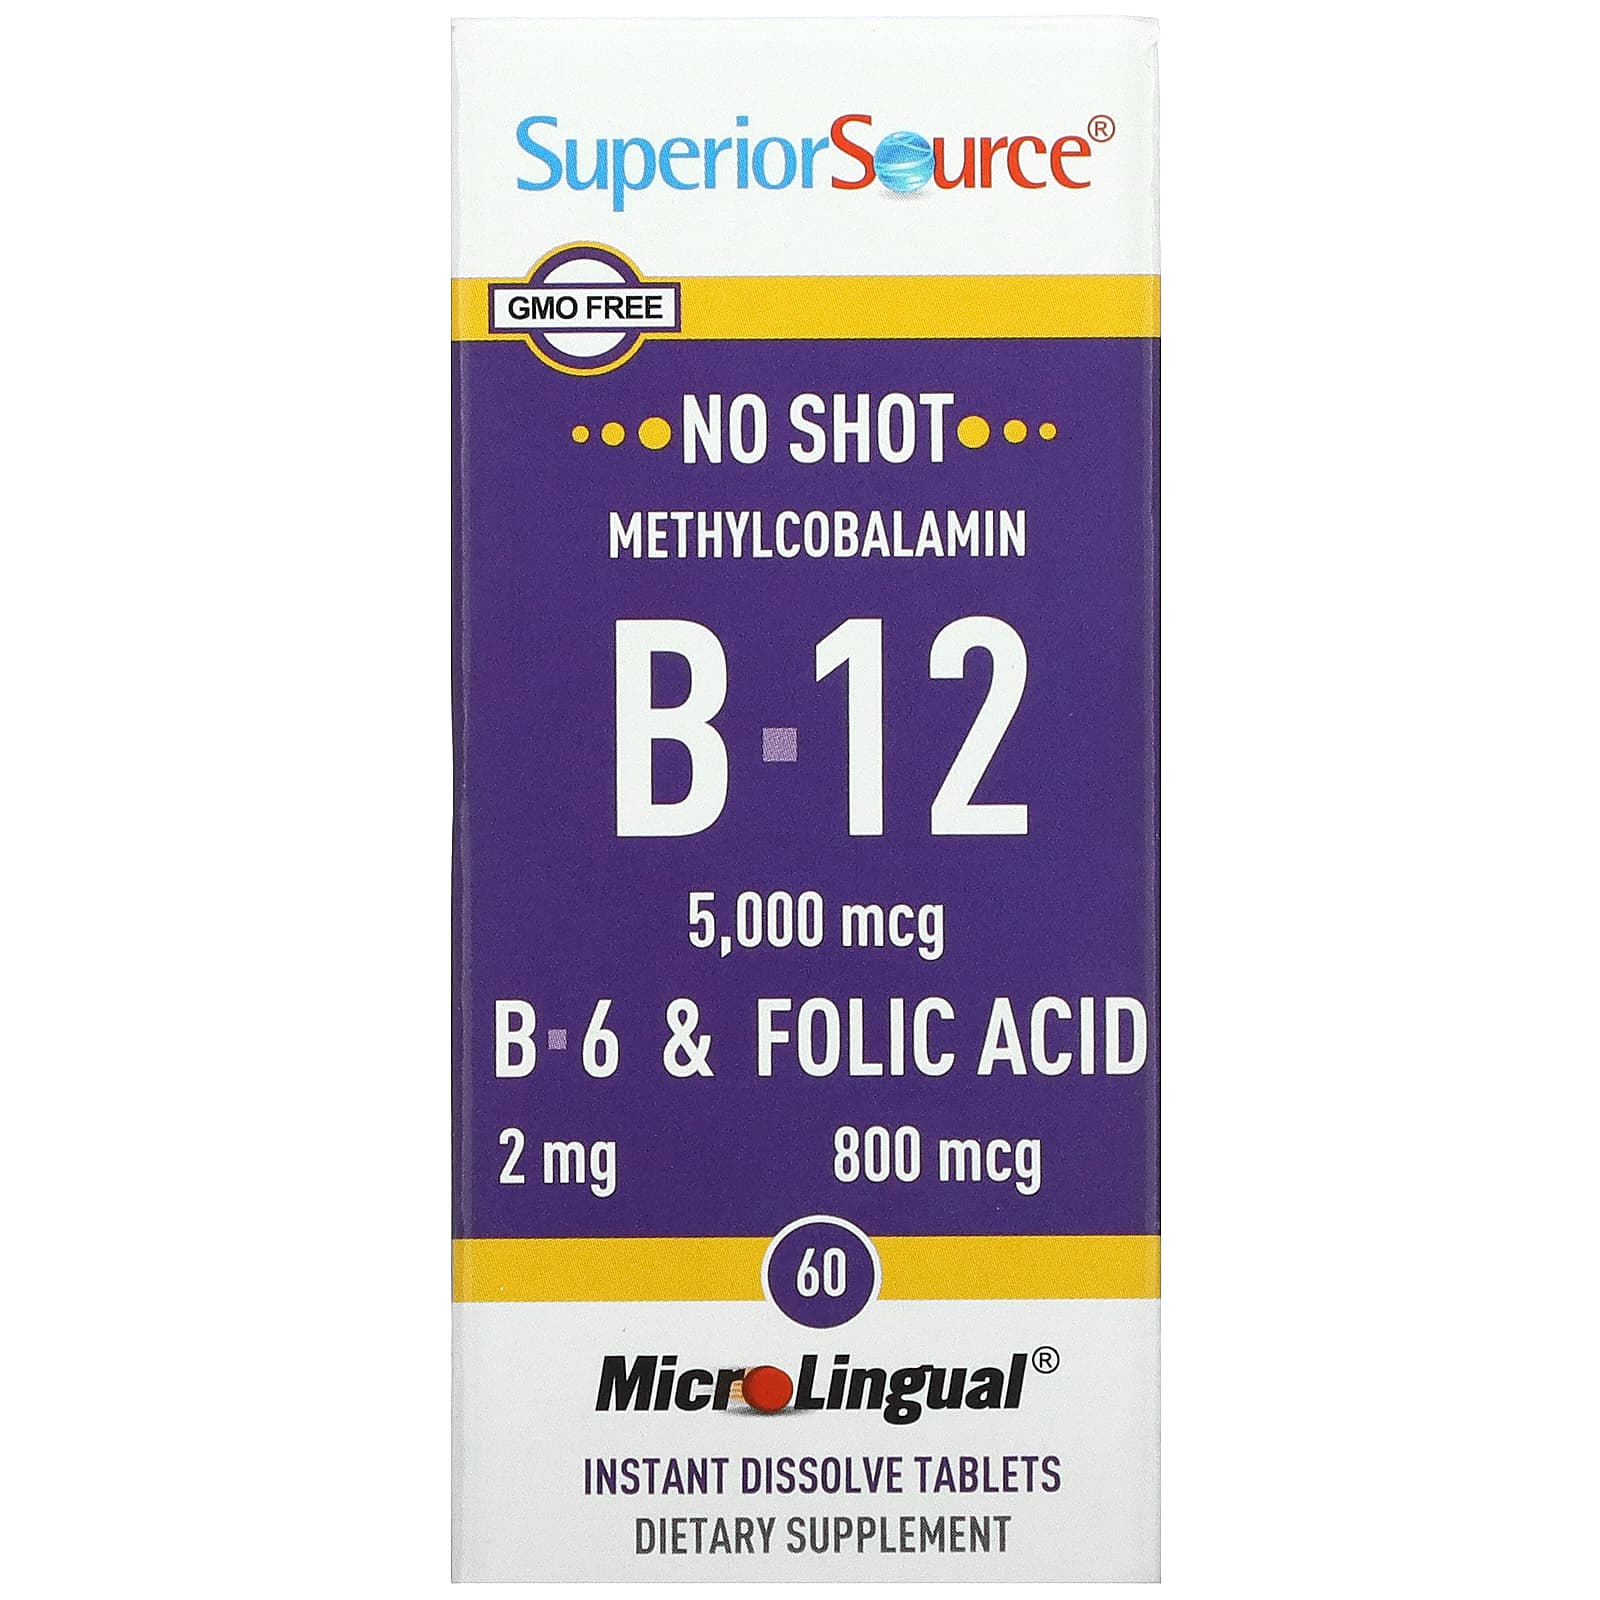 Superior Source Метилкобаламин B12 5000 мкг B-6 и фолиевая кислота 800 мкг 60 таблеток МикроЛингвал superior source метилкобаламин b12 5000 мкг 60 микролингвальных таблеток